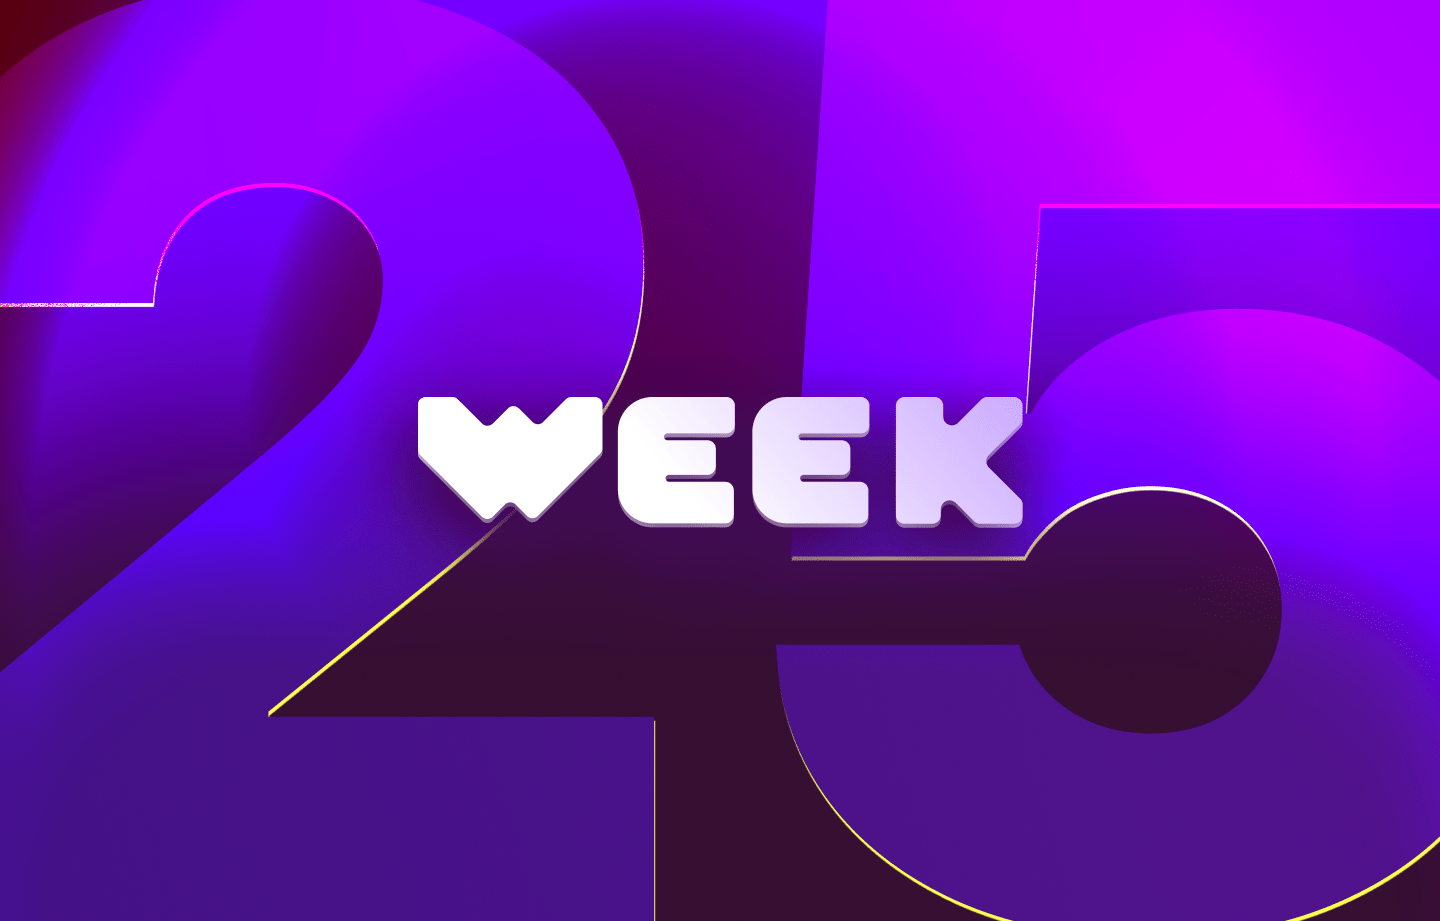 This week in web3 #25